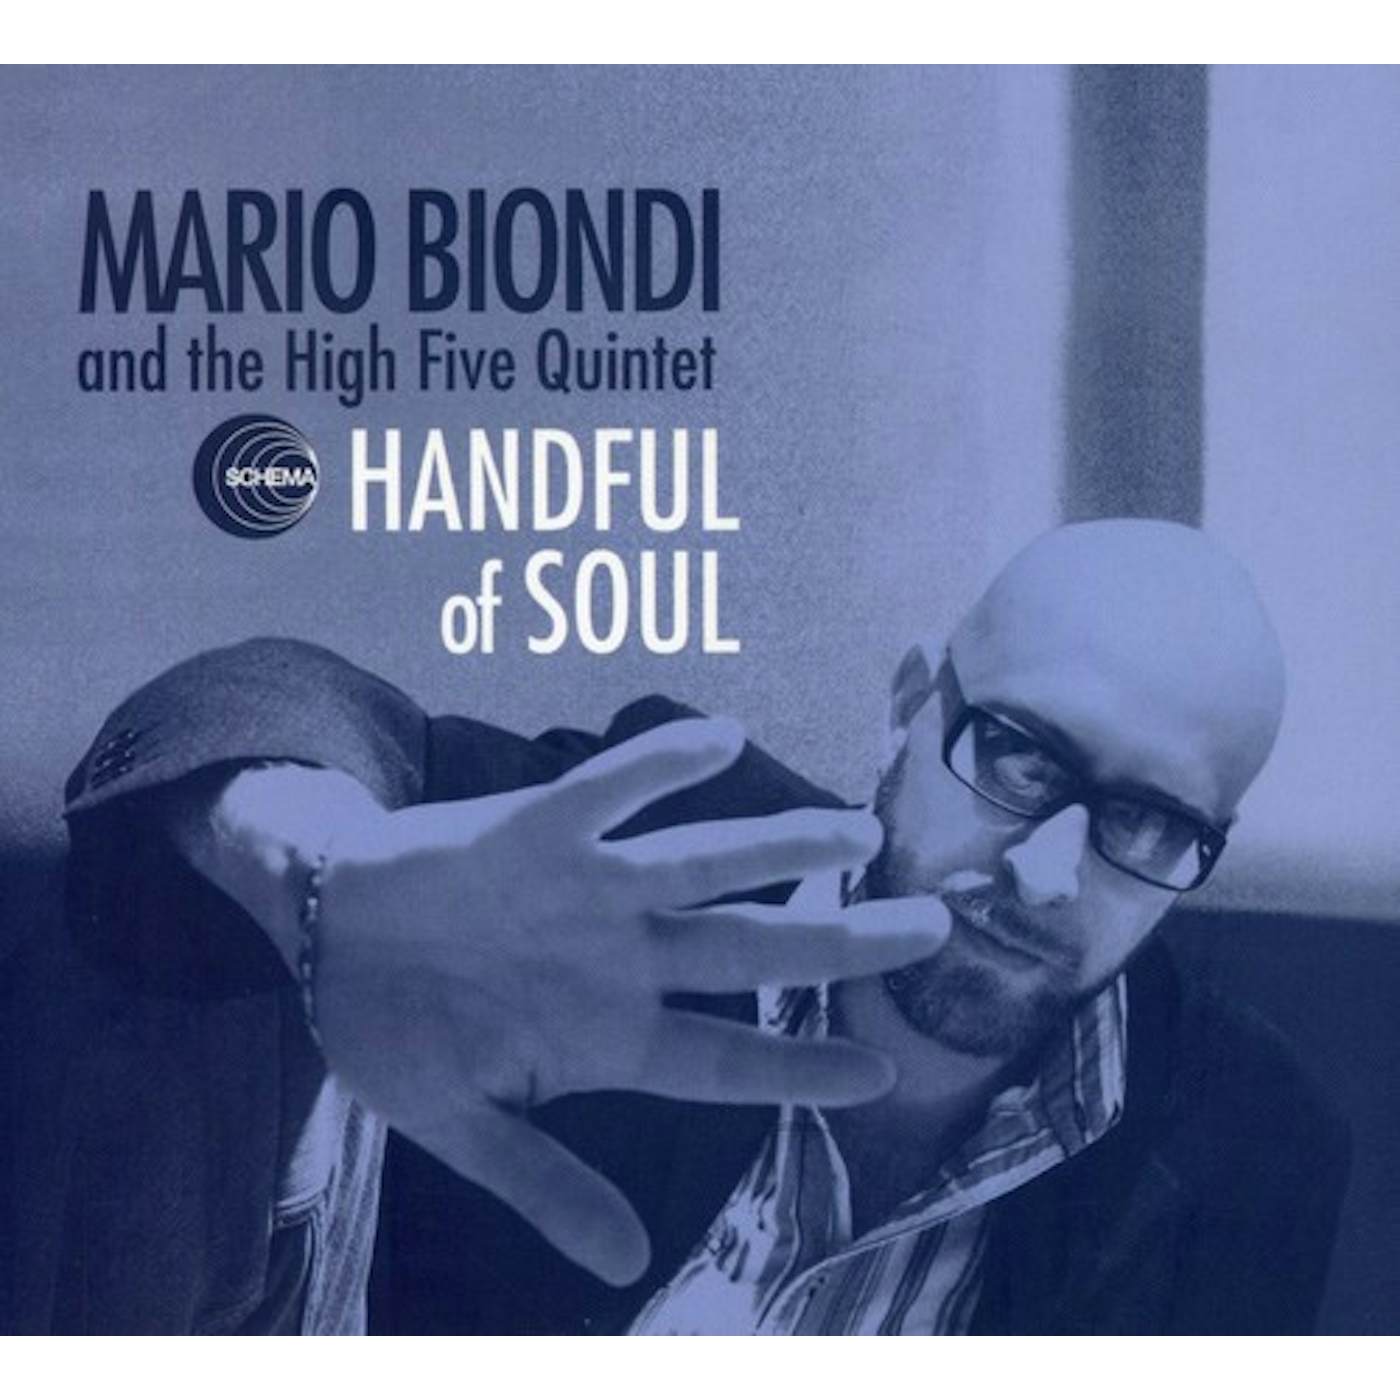 Mario Biondi HANDFUL OF SOUL CD